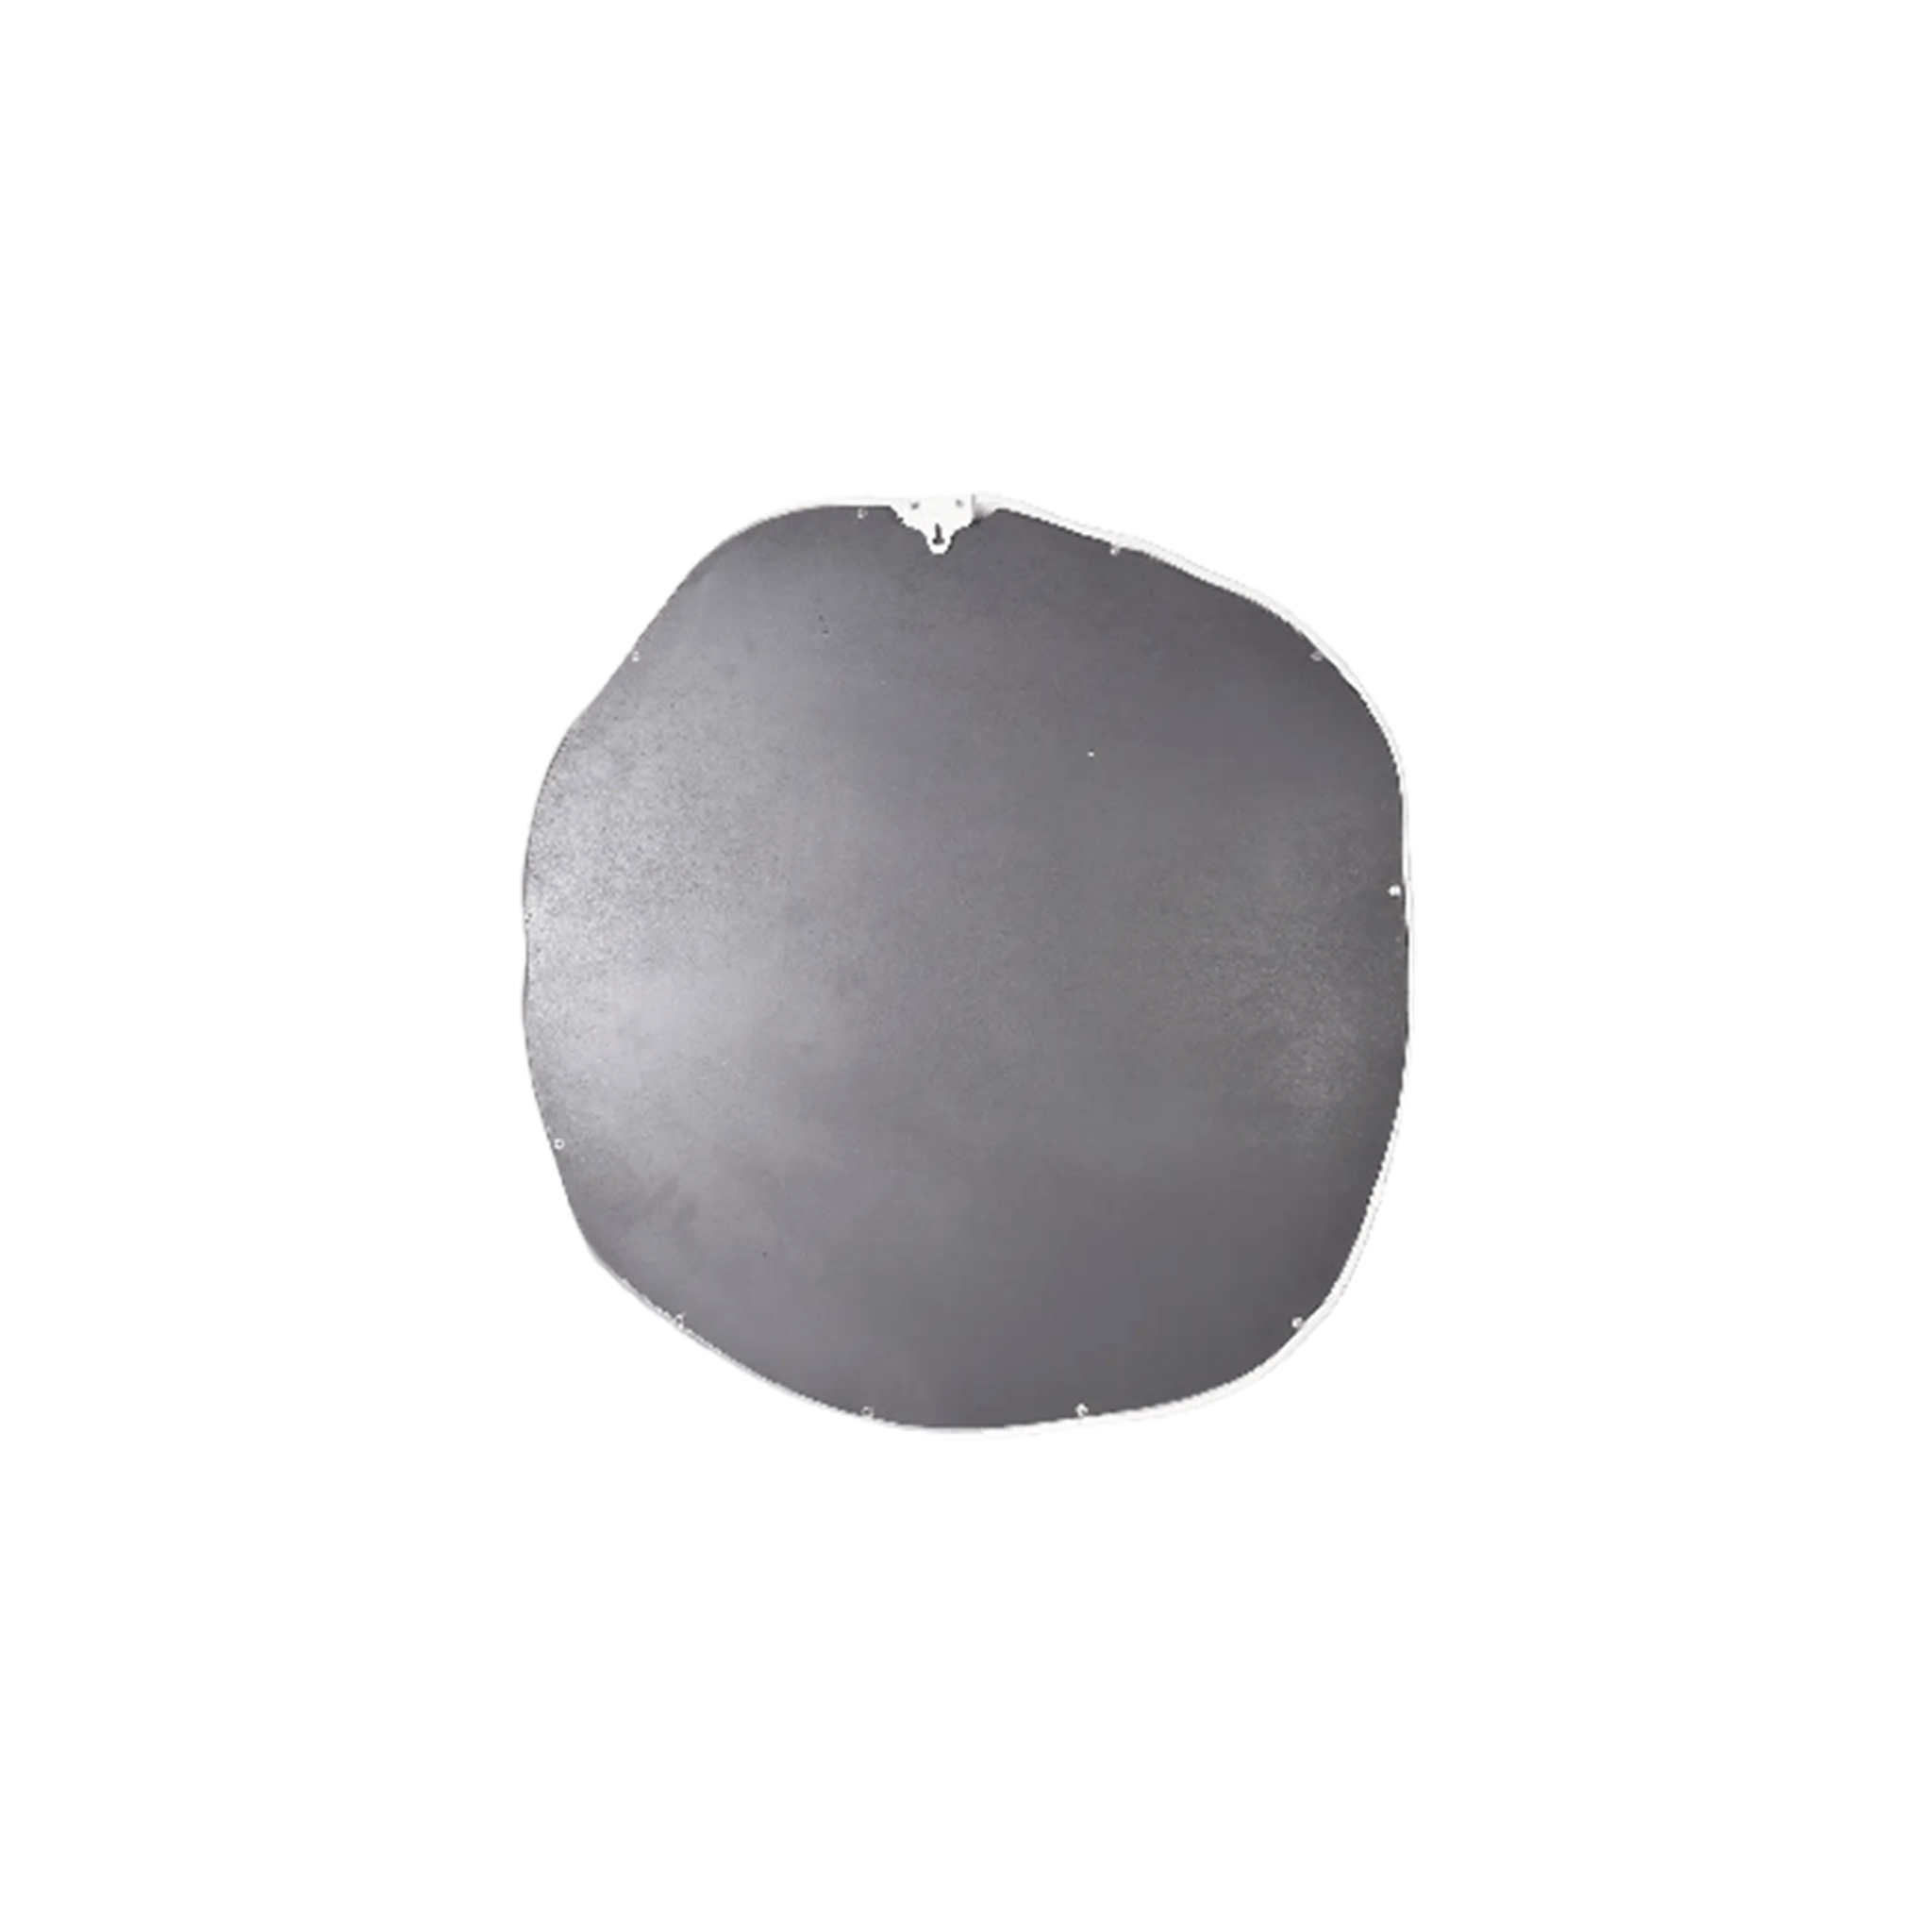 Foundry Mirror (White - Round)